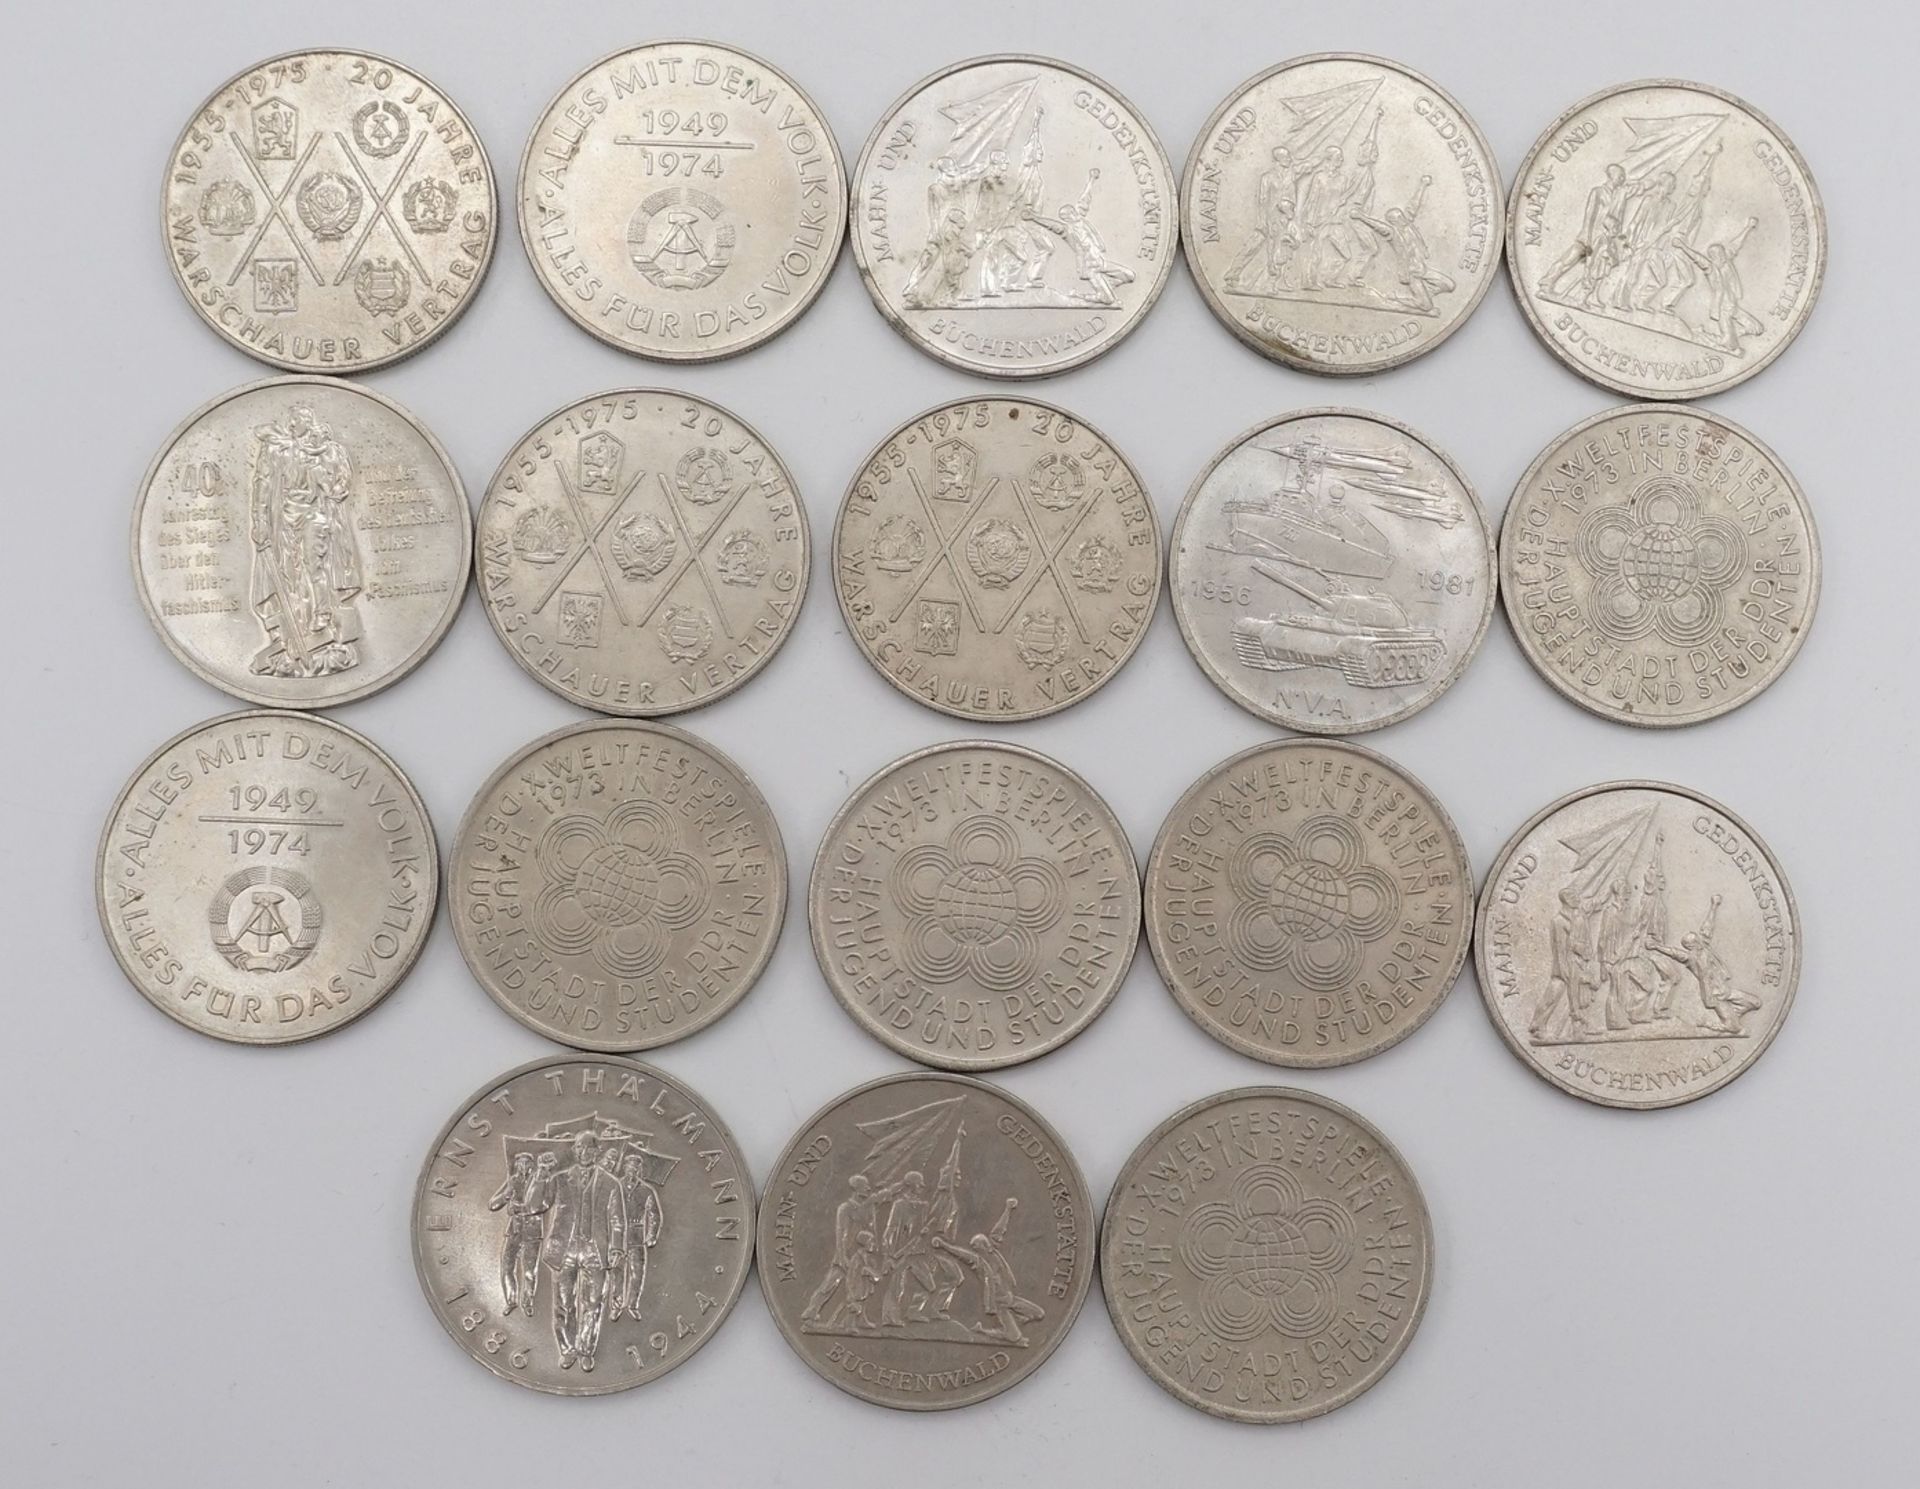 47 Umlaufmünzen, 10 und 20 DDR MarkKupfer / Nickel, 20 x 10 DDR Mark und 27 x 20 DDR Mark, Erhaltung - Image 4 of 5